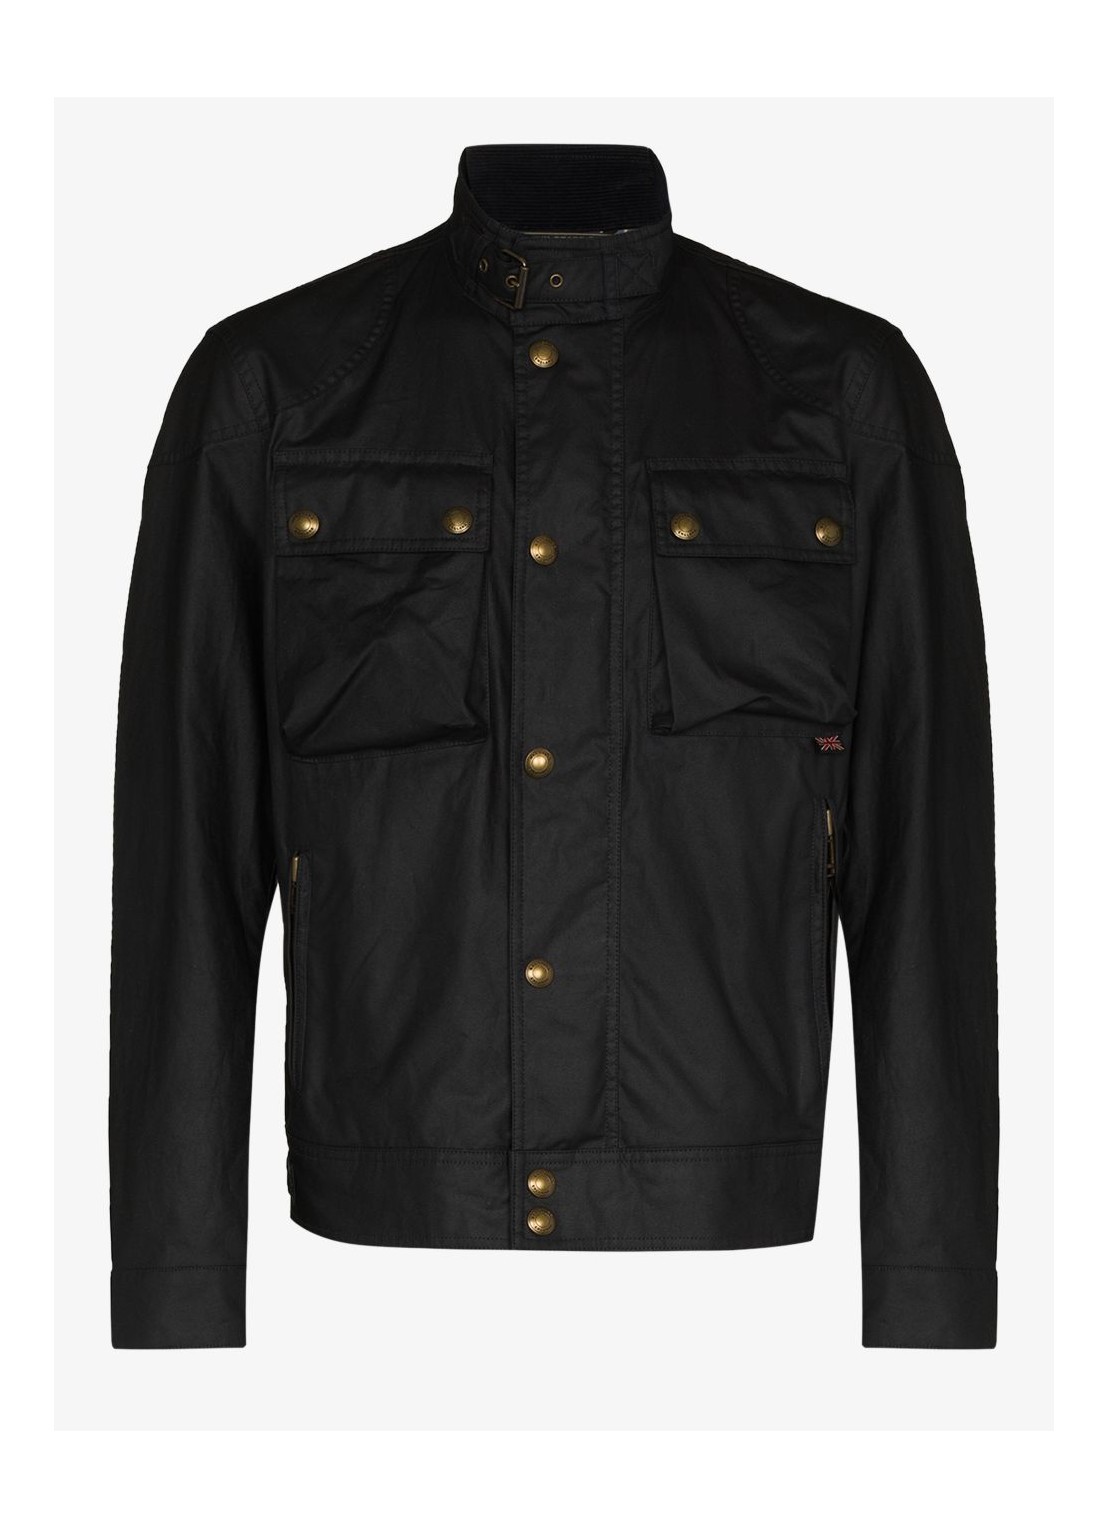 Outerwear belstaff outerwear man racemaster jacket 104160 dknvy talla 52
 